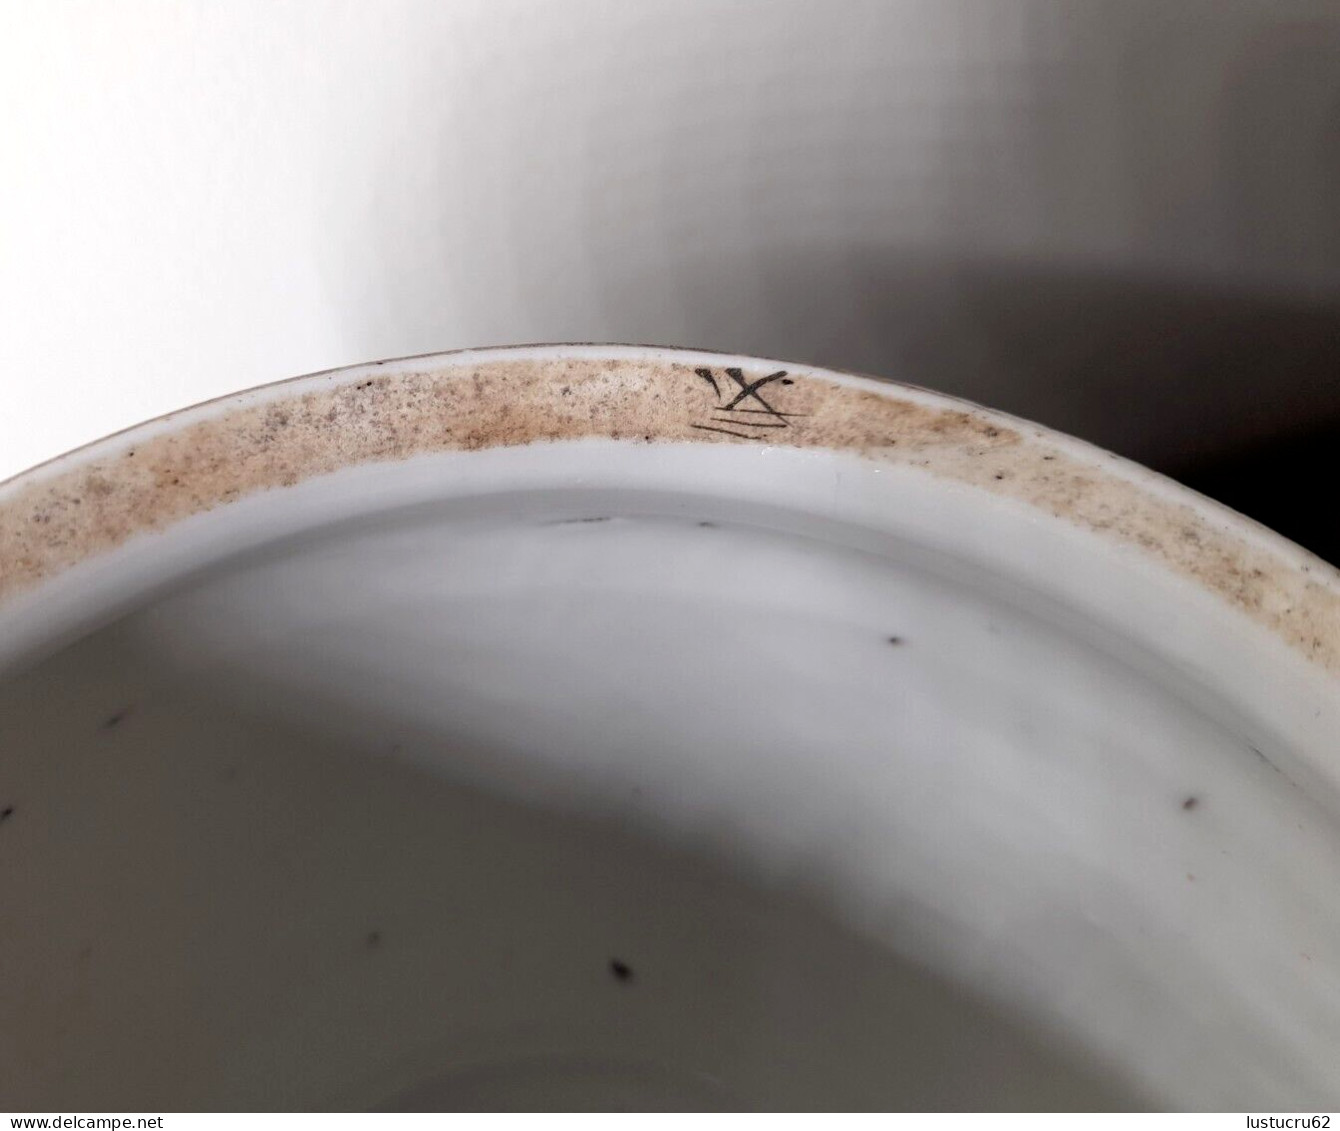 CHINE : XIXème Pot couvert en porcelaine polychrome famille verte